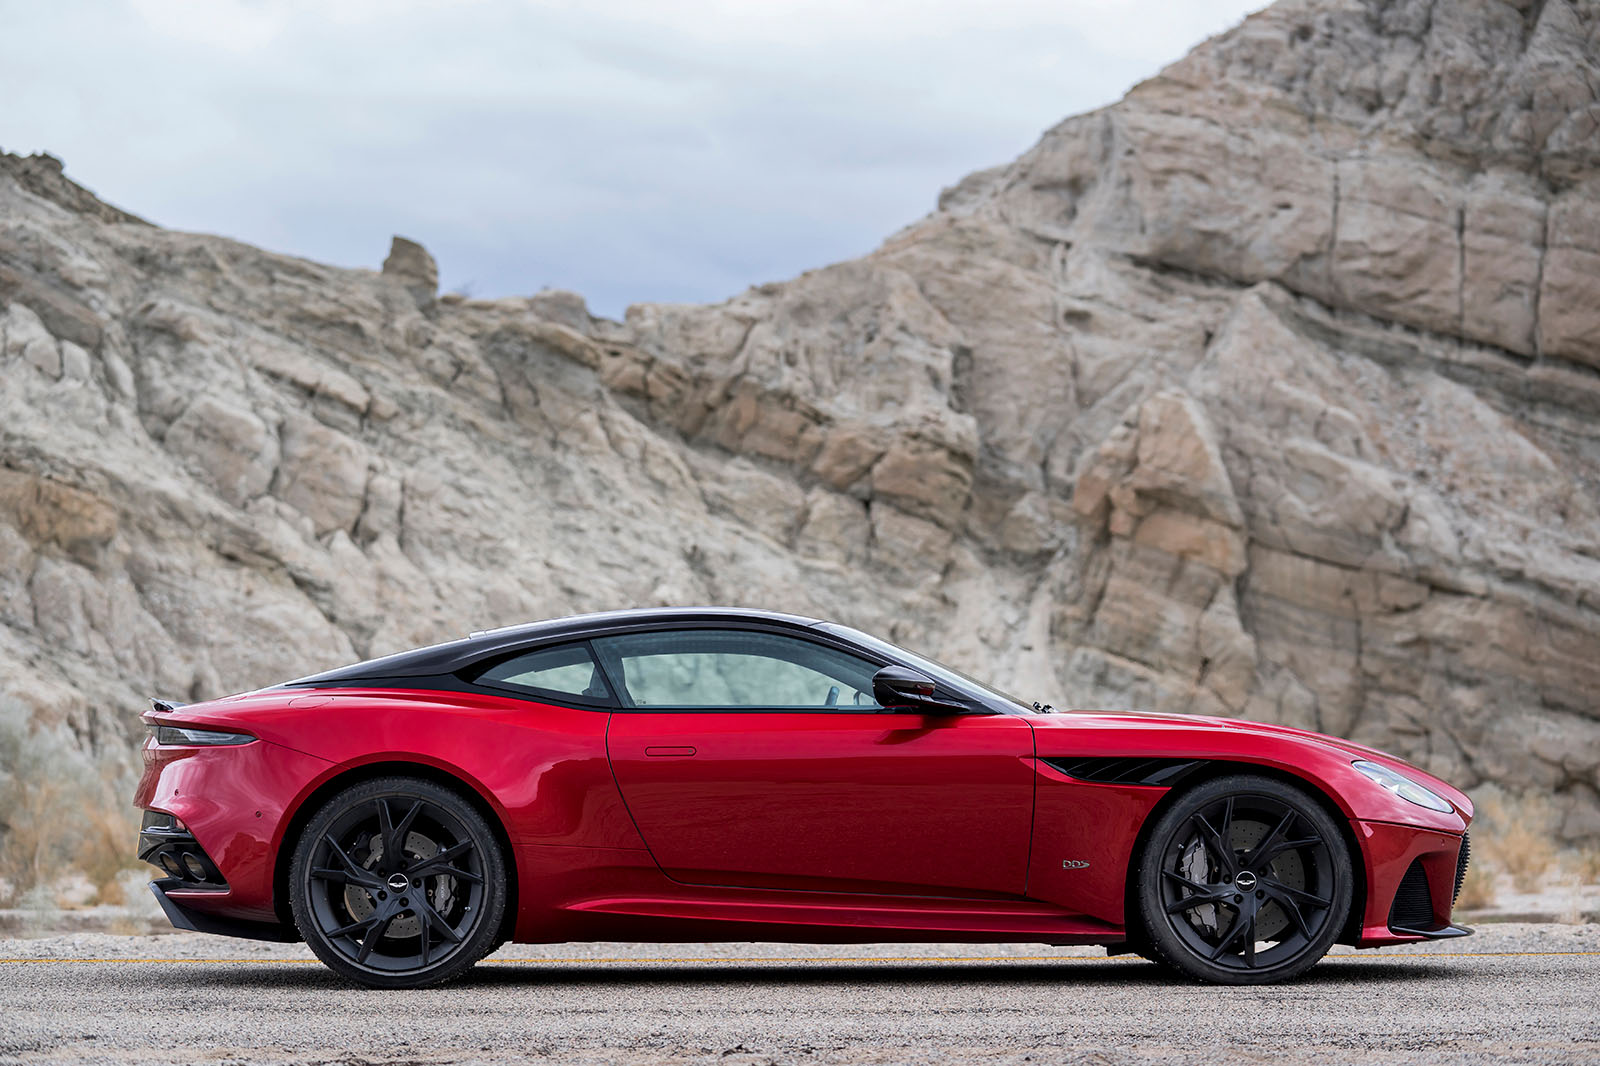 Руководитель Aston Martin по поводу того, почему DBS Superleggera по-прежнему является надлежащим GT